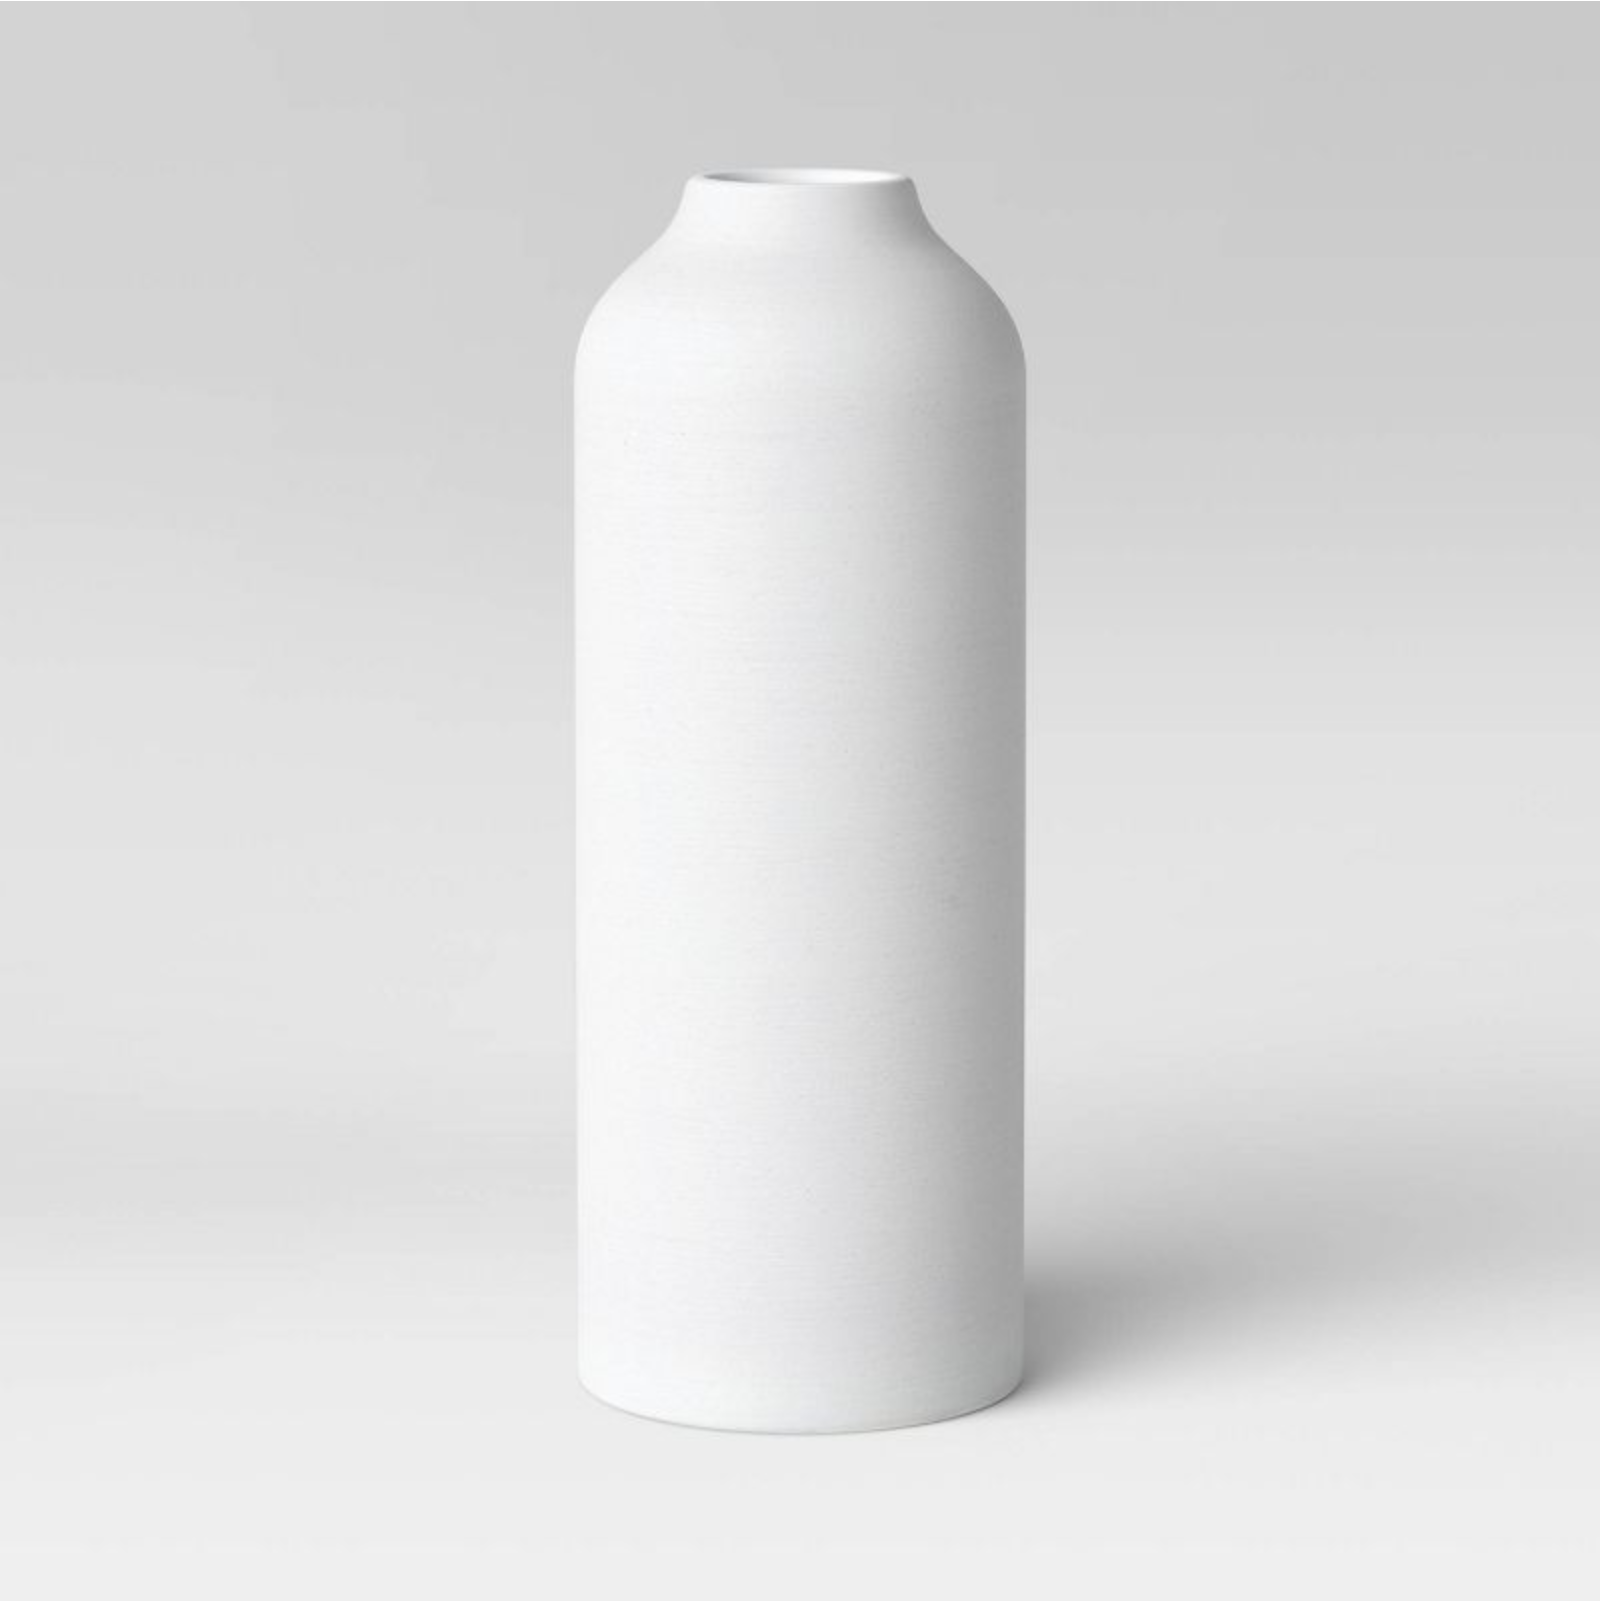 White tapered vase set